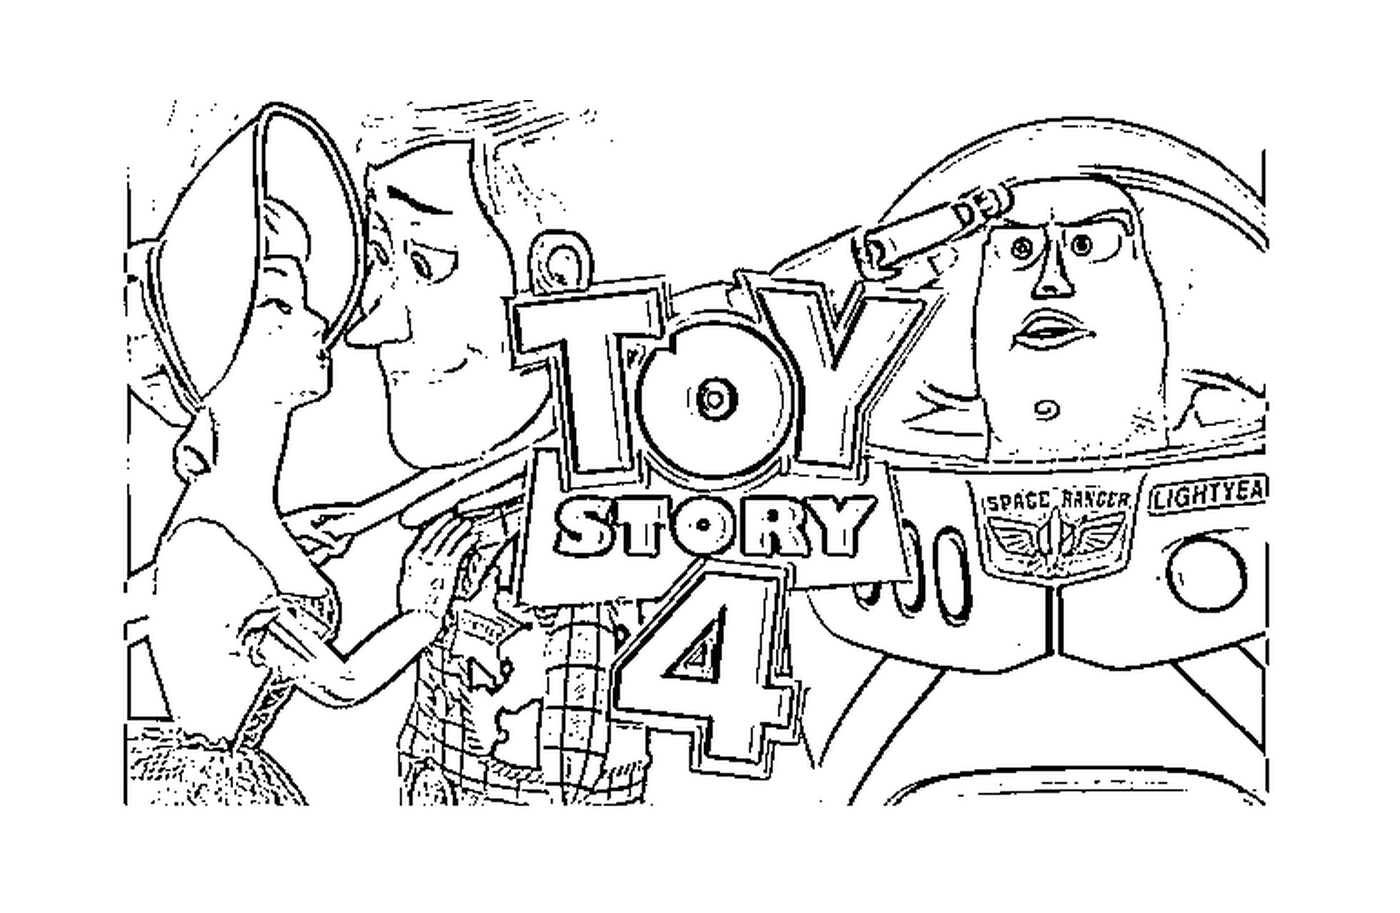  Toy Story 4, emocionante nueva aventura 